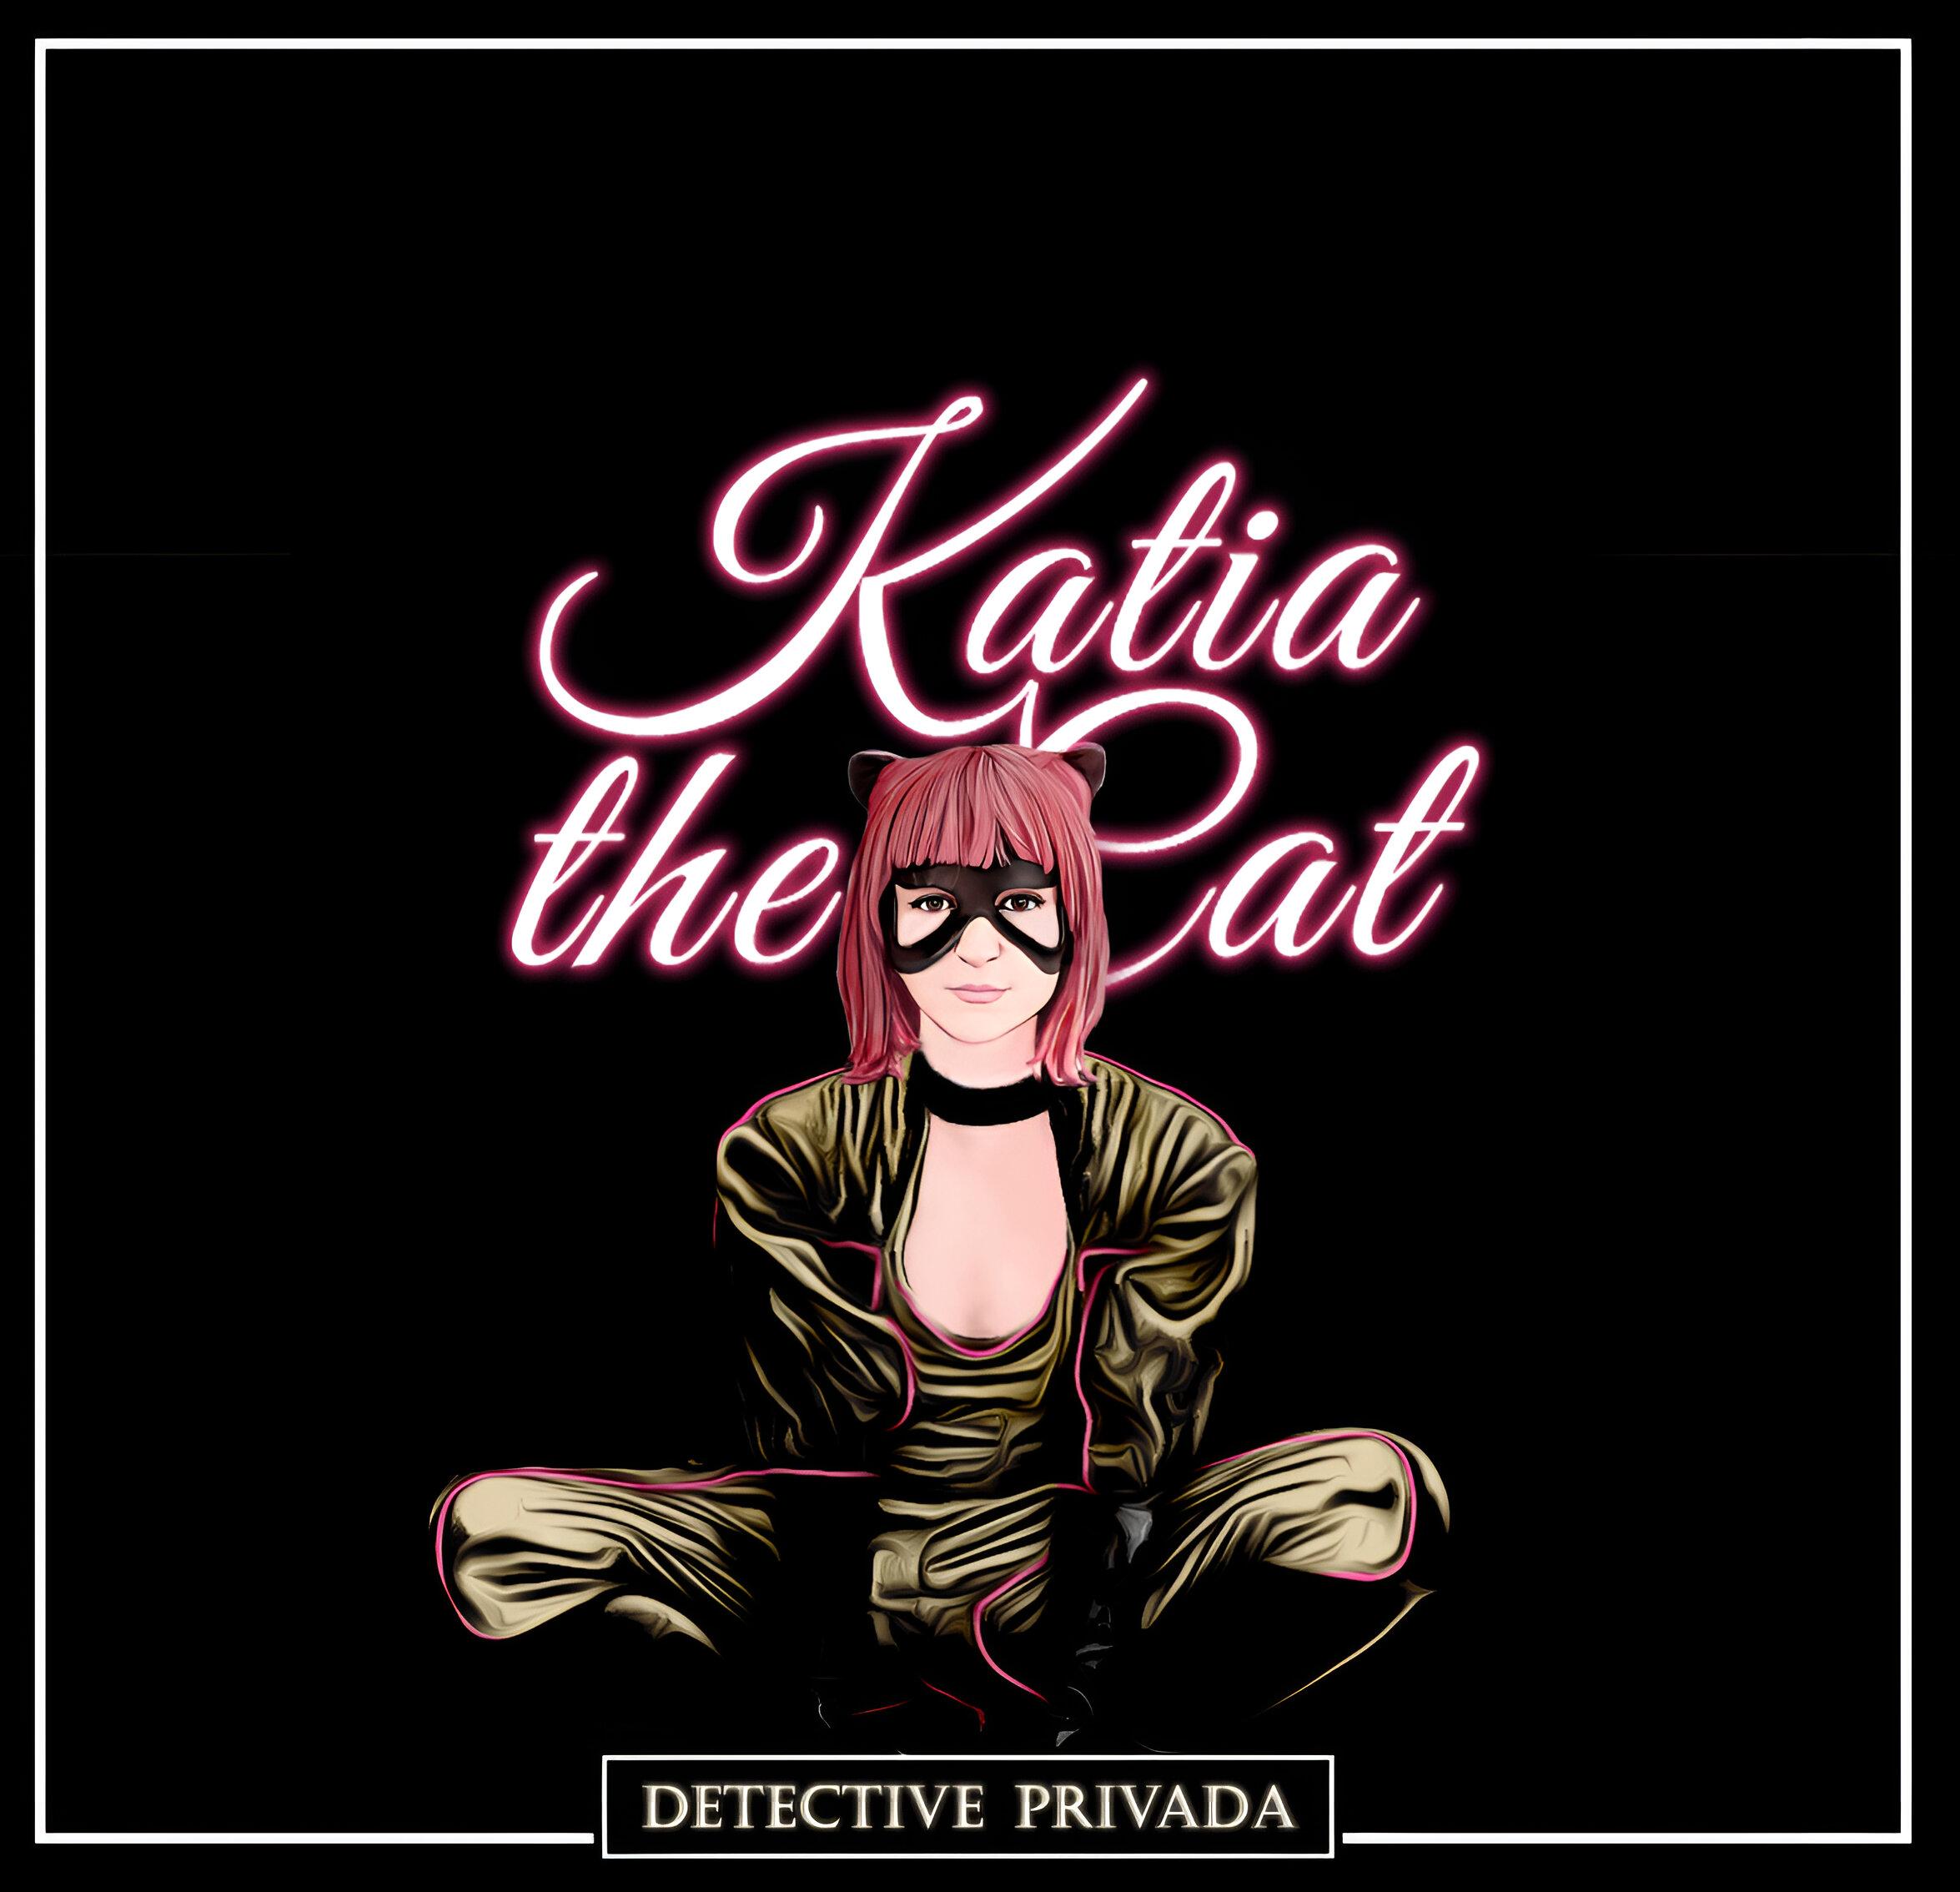 KATIA THE CAT